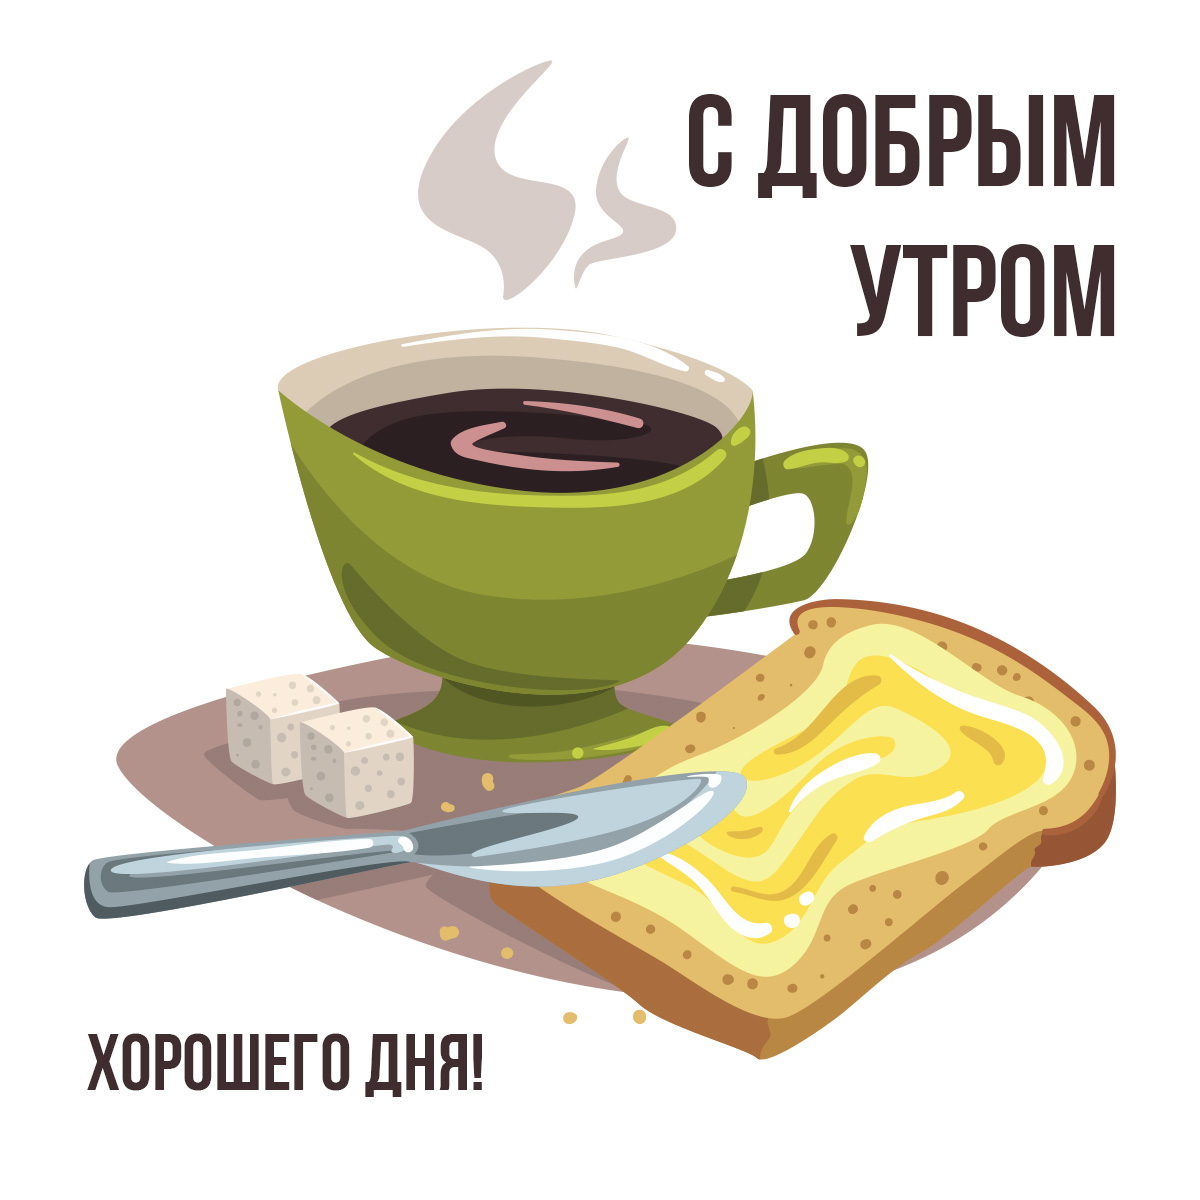 Картинка с добрым утром хорошего дня и зелёная чашка с чёрным кофе, хлеб с маслом, кусочки сахара и столовый нож.